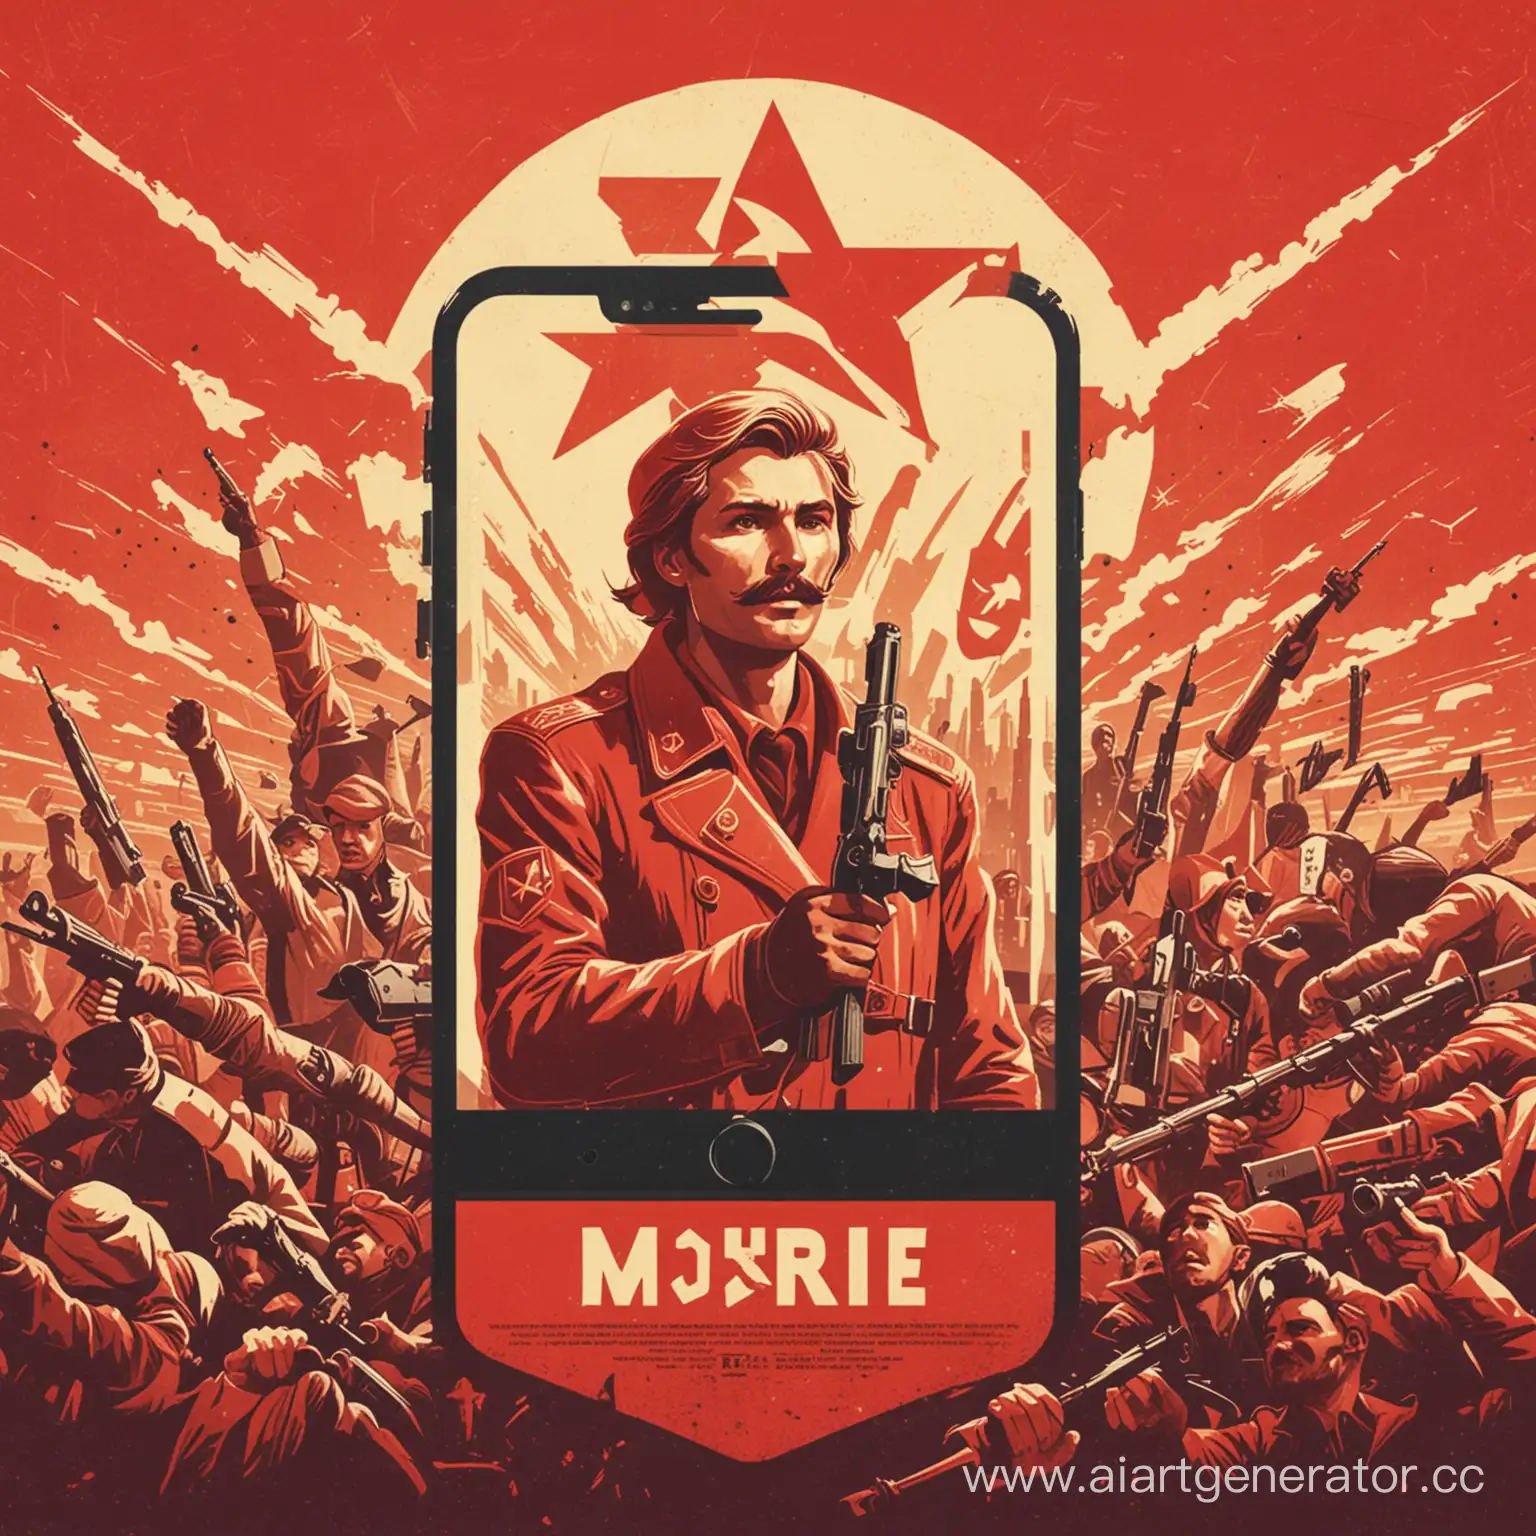 Mobile-Revolution-SovietStyle-Poster-Tribute